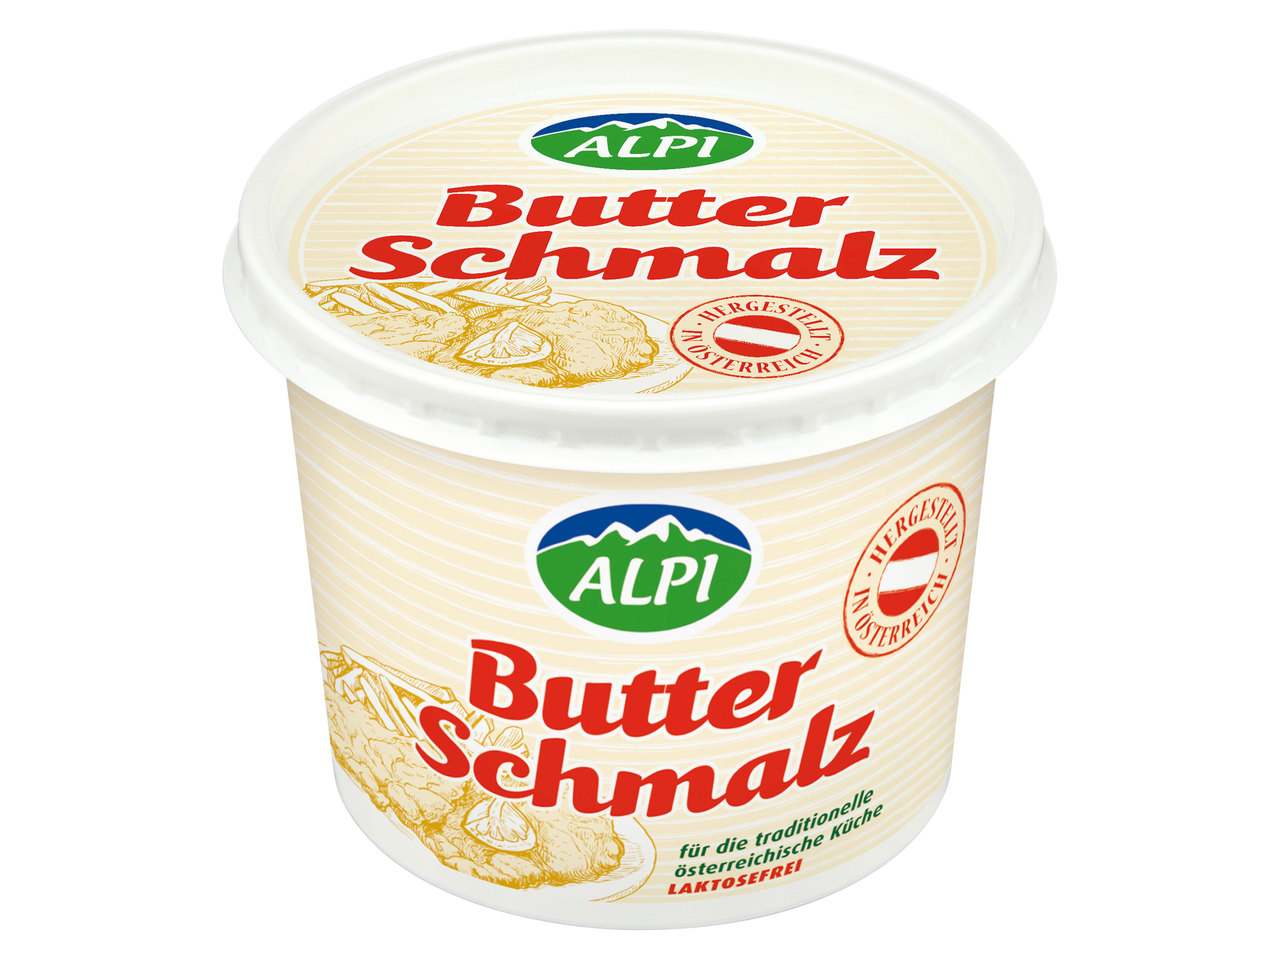 ALPI Butterschmalz